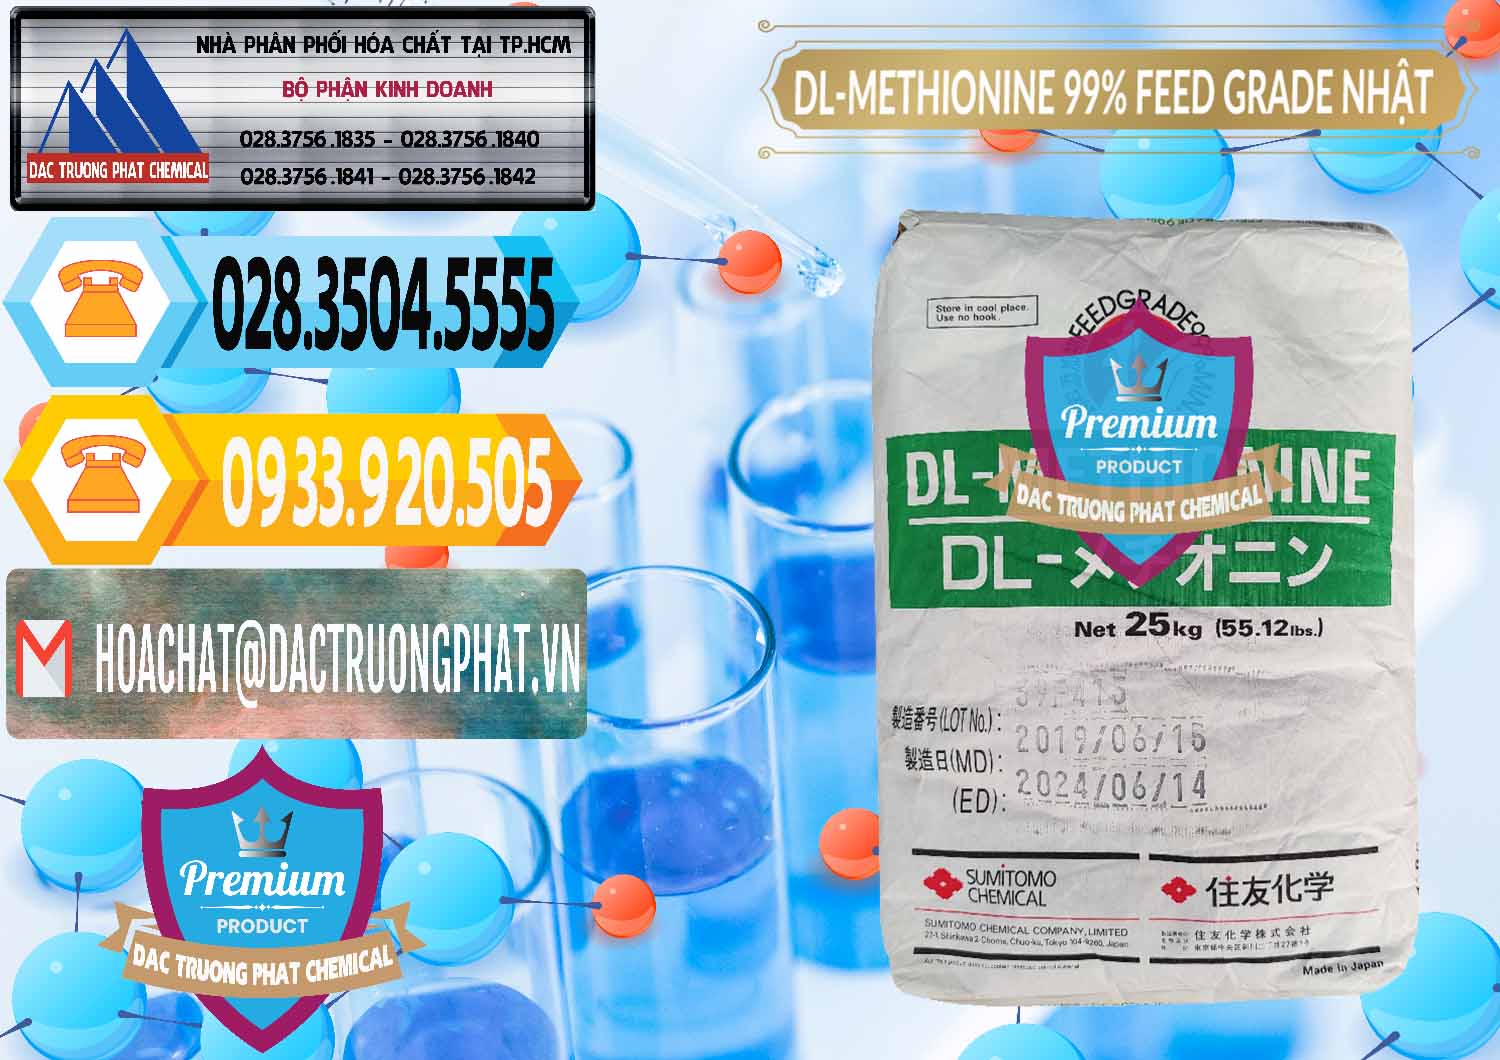 Nơi cung cấp và bán DL-Methionine - C5H11NO2S Feed Grade Sumitomo Nhật Bản Japan - 0313 - Đơn vị chuyên phân phối - bán hóa chất tại TP.HCM - hoachattayrua.net